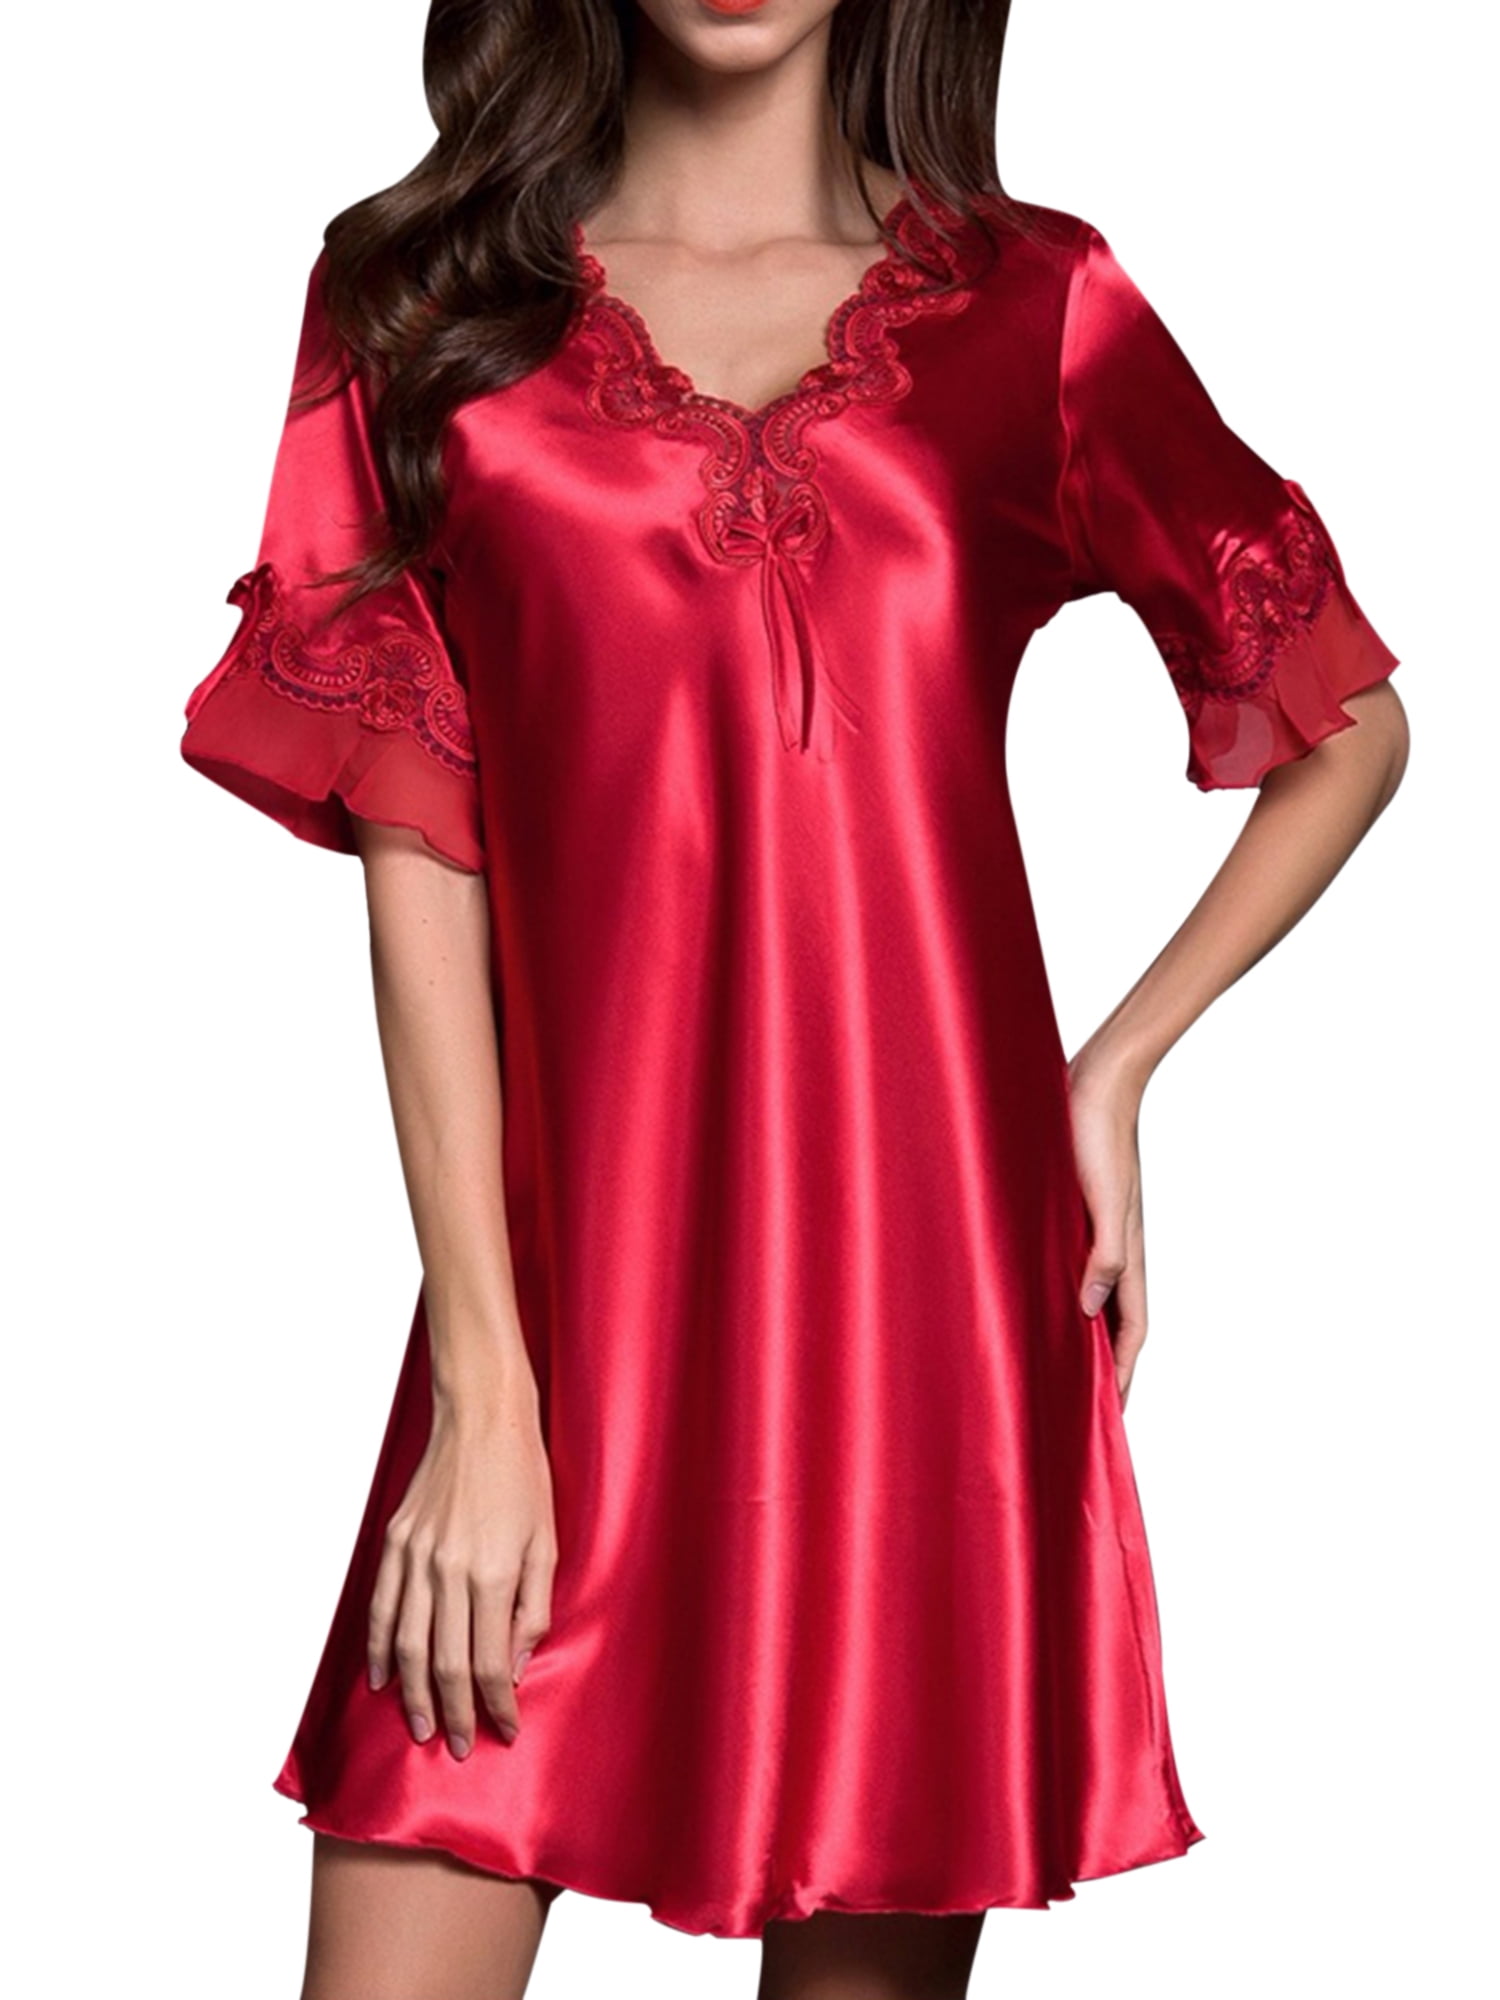 Womens Floral Lace Silk Satin Lingerie Sleepwear Night Dress Nightwear Dress USA